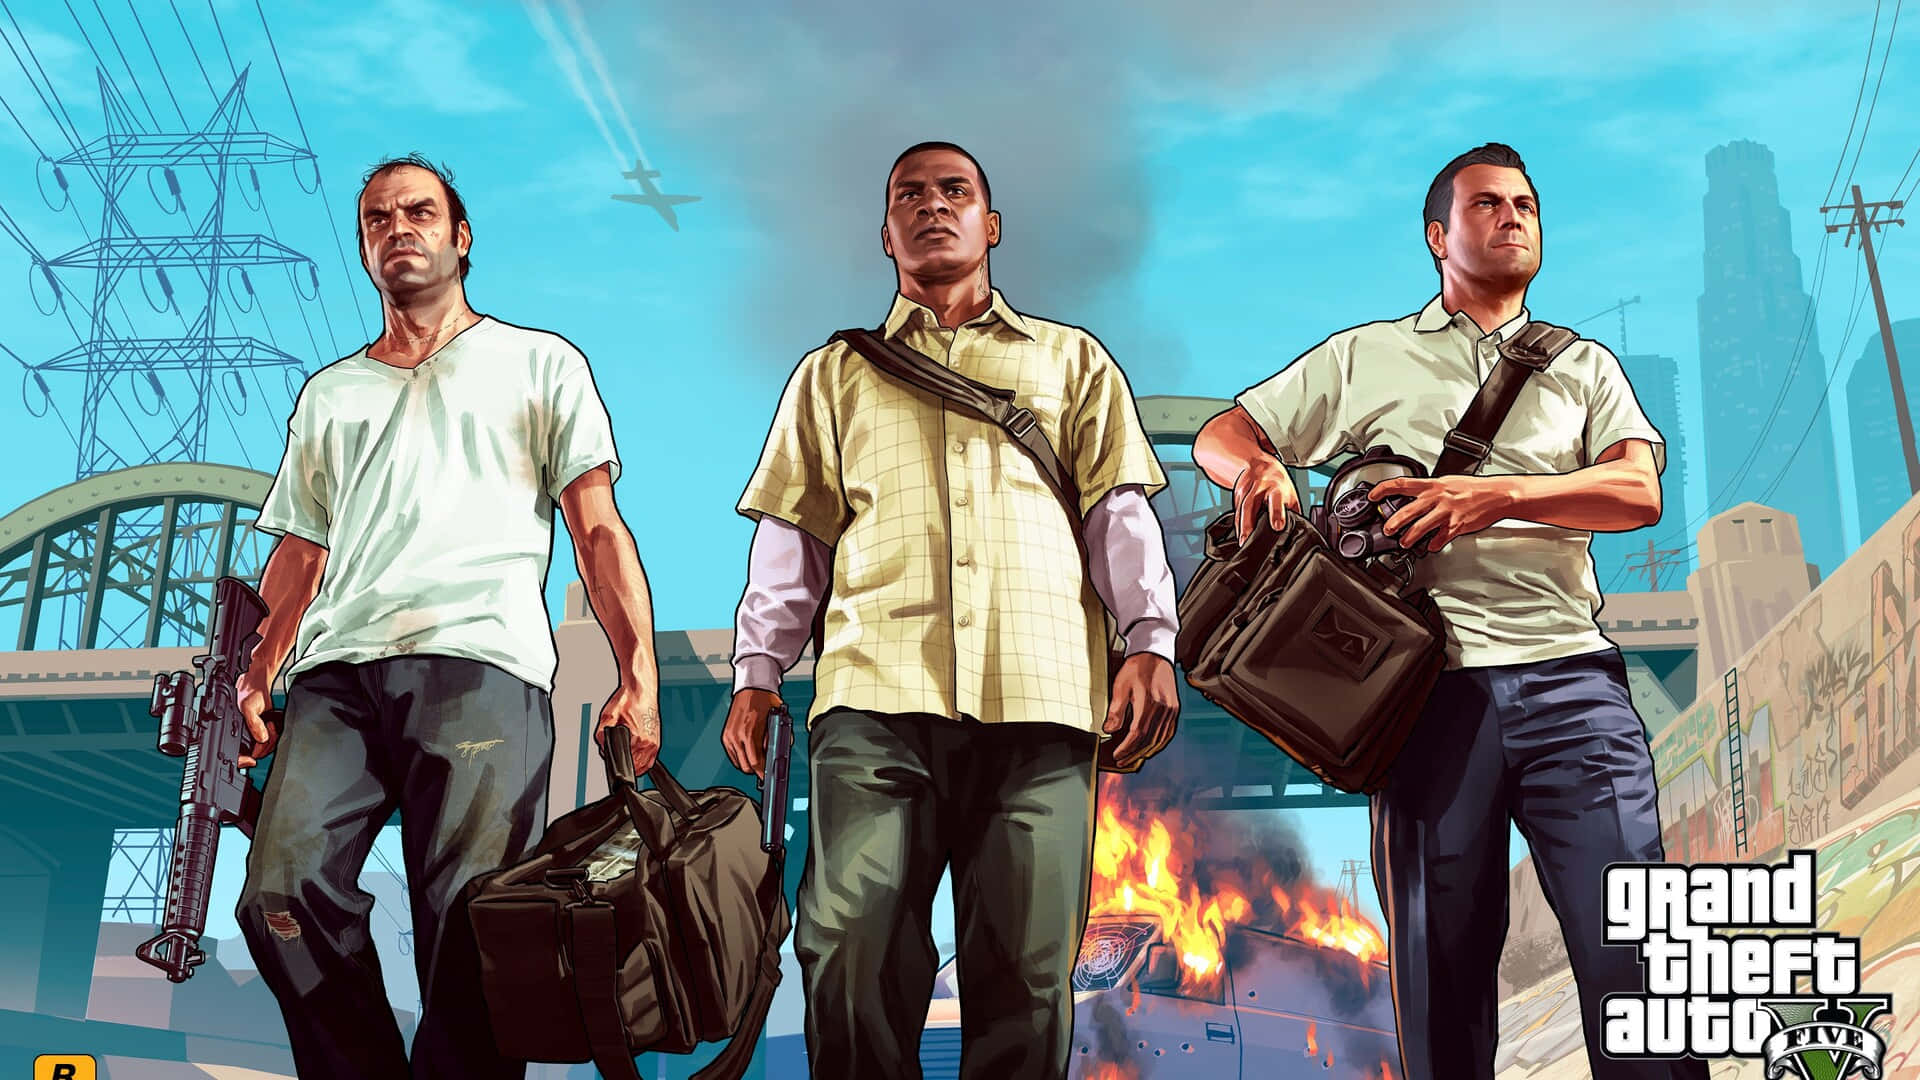 Grand Theft Auto V - Udforsk eventyret Wallpaper